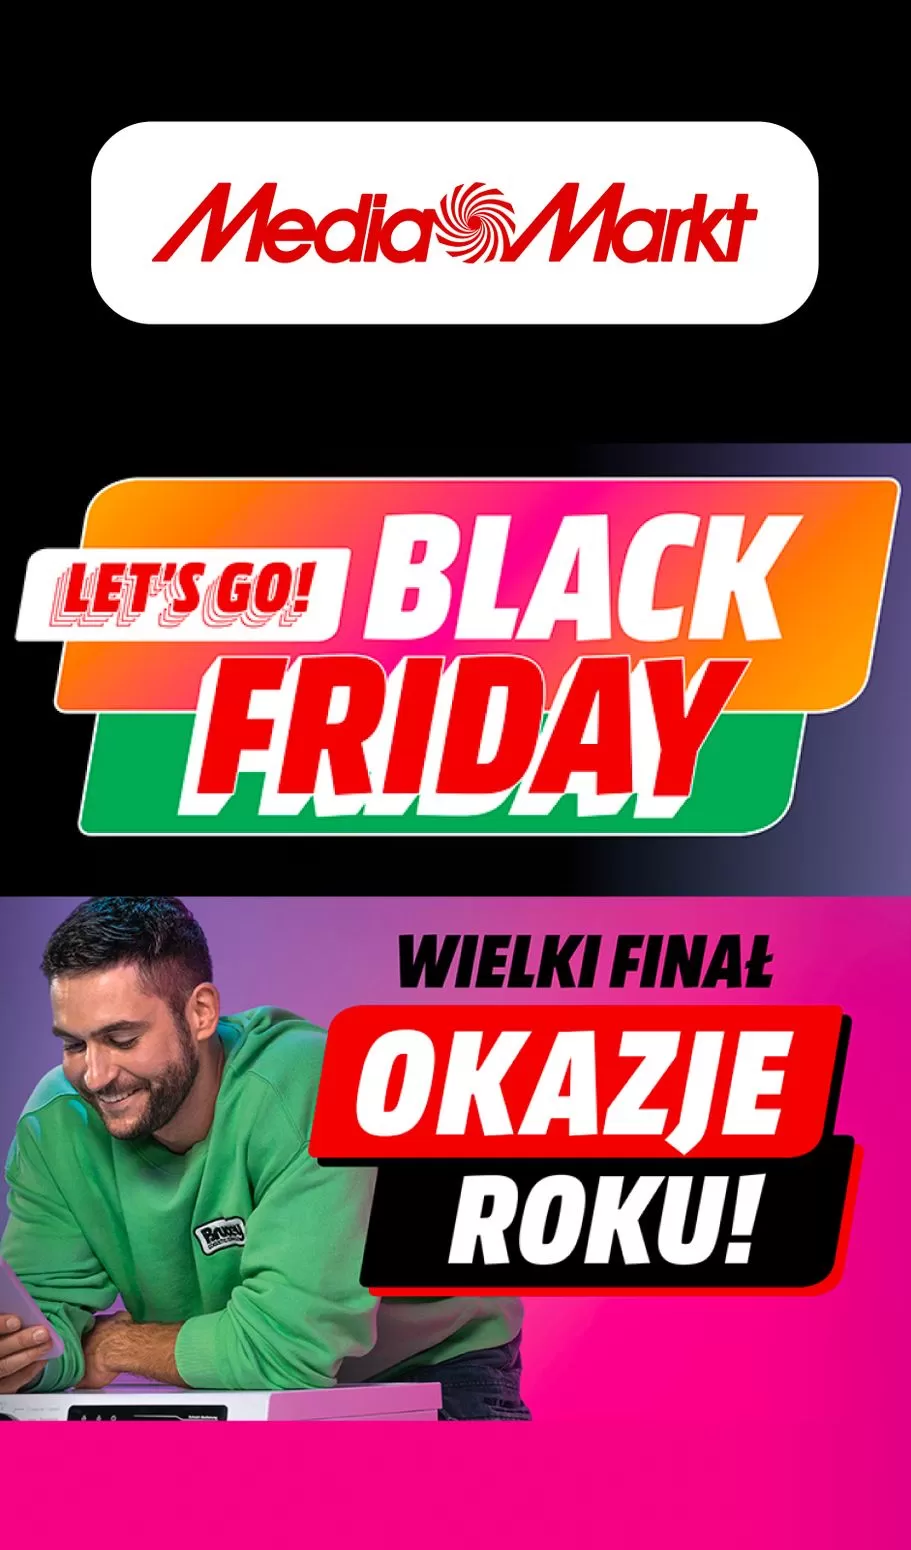 
                        Gazetka promocyjna Media Markt. Tytuł: Lets go! Black friday. Oferta obowiązuje: 2023-11-22 - 2023-11-30